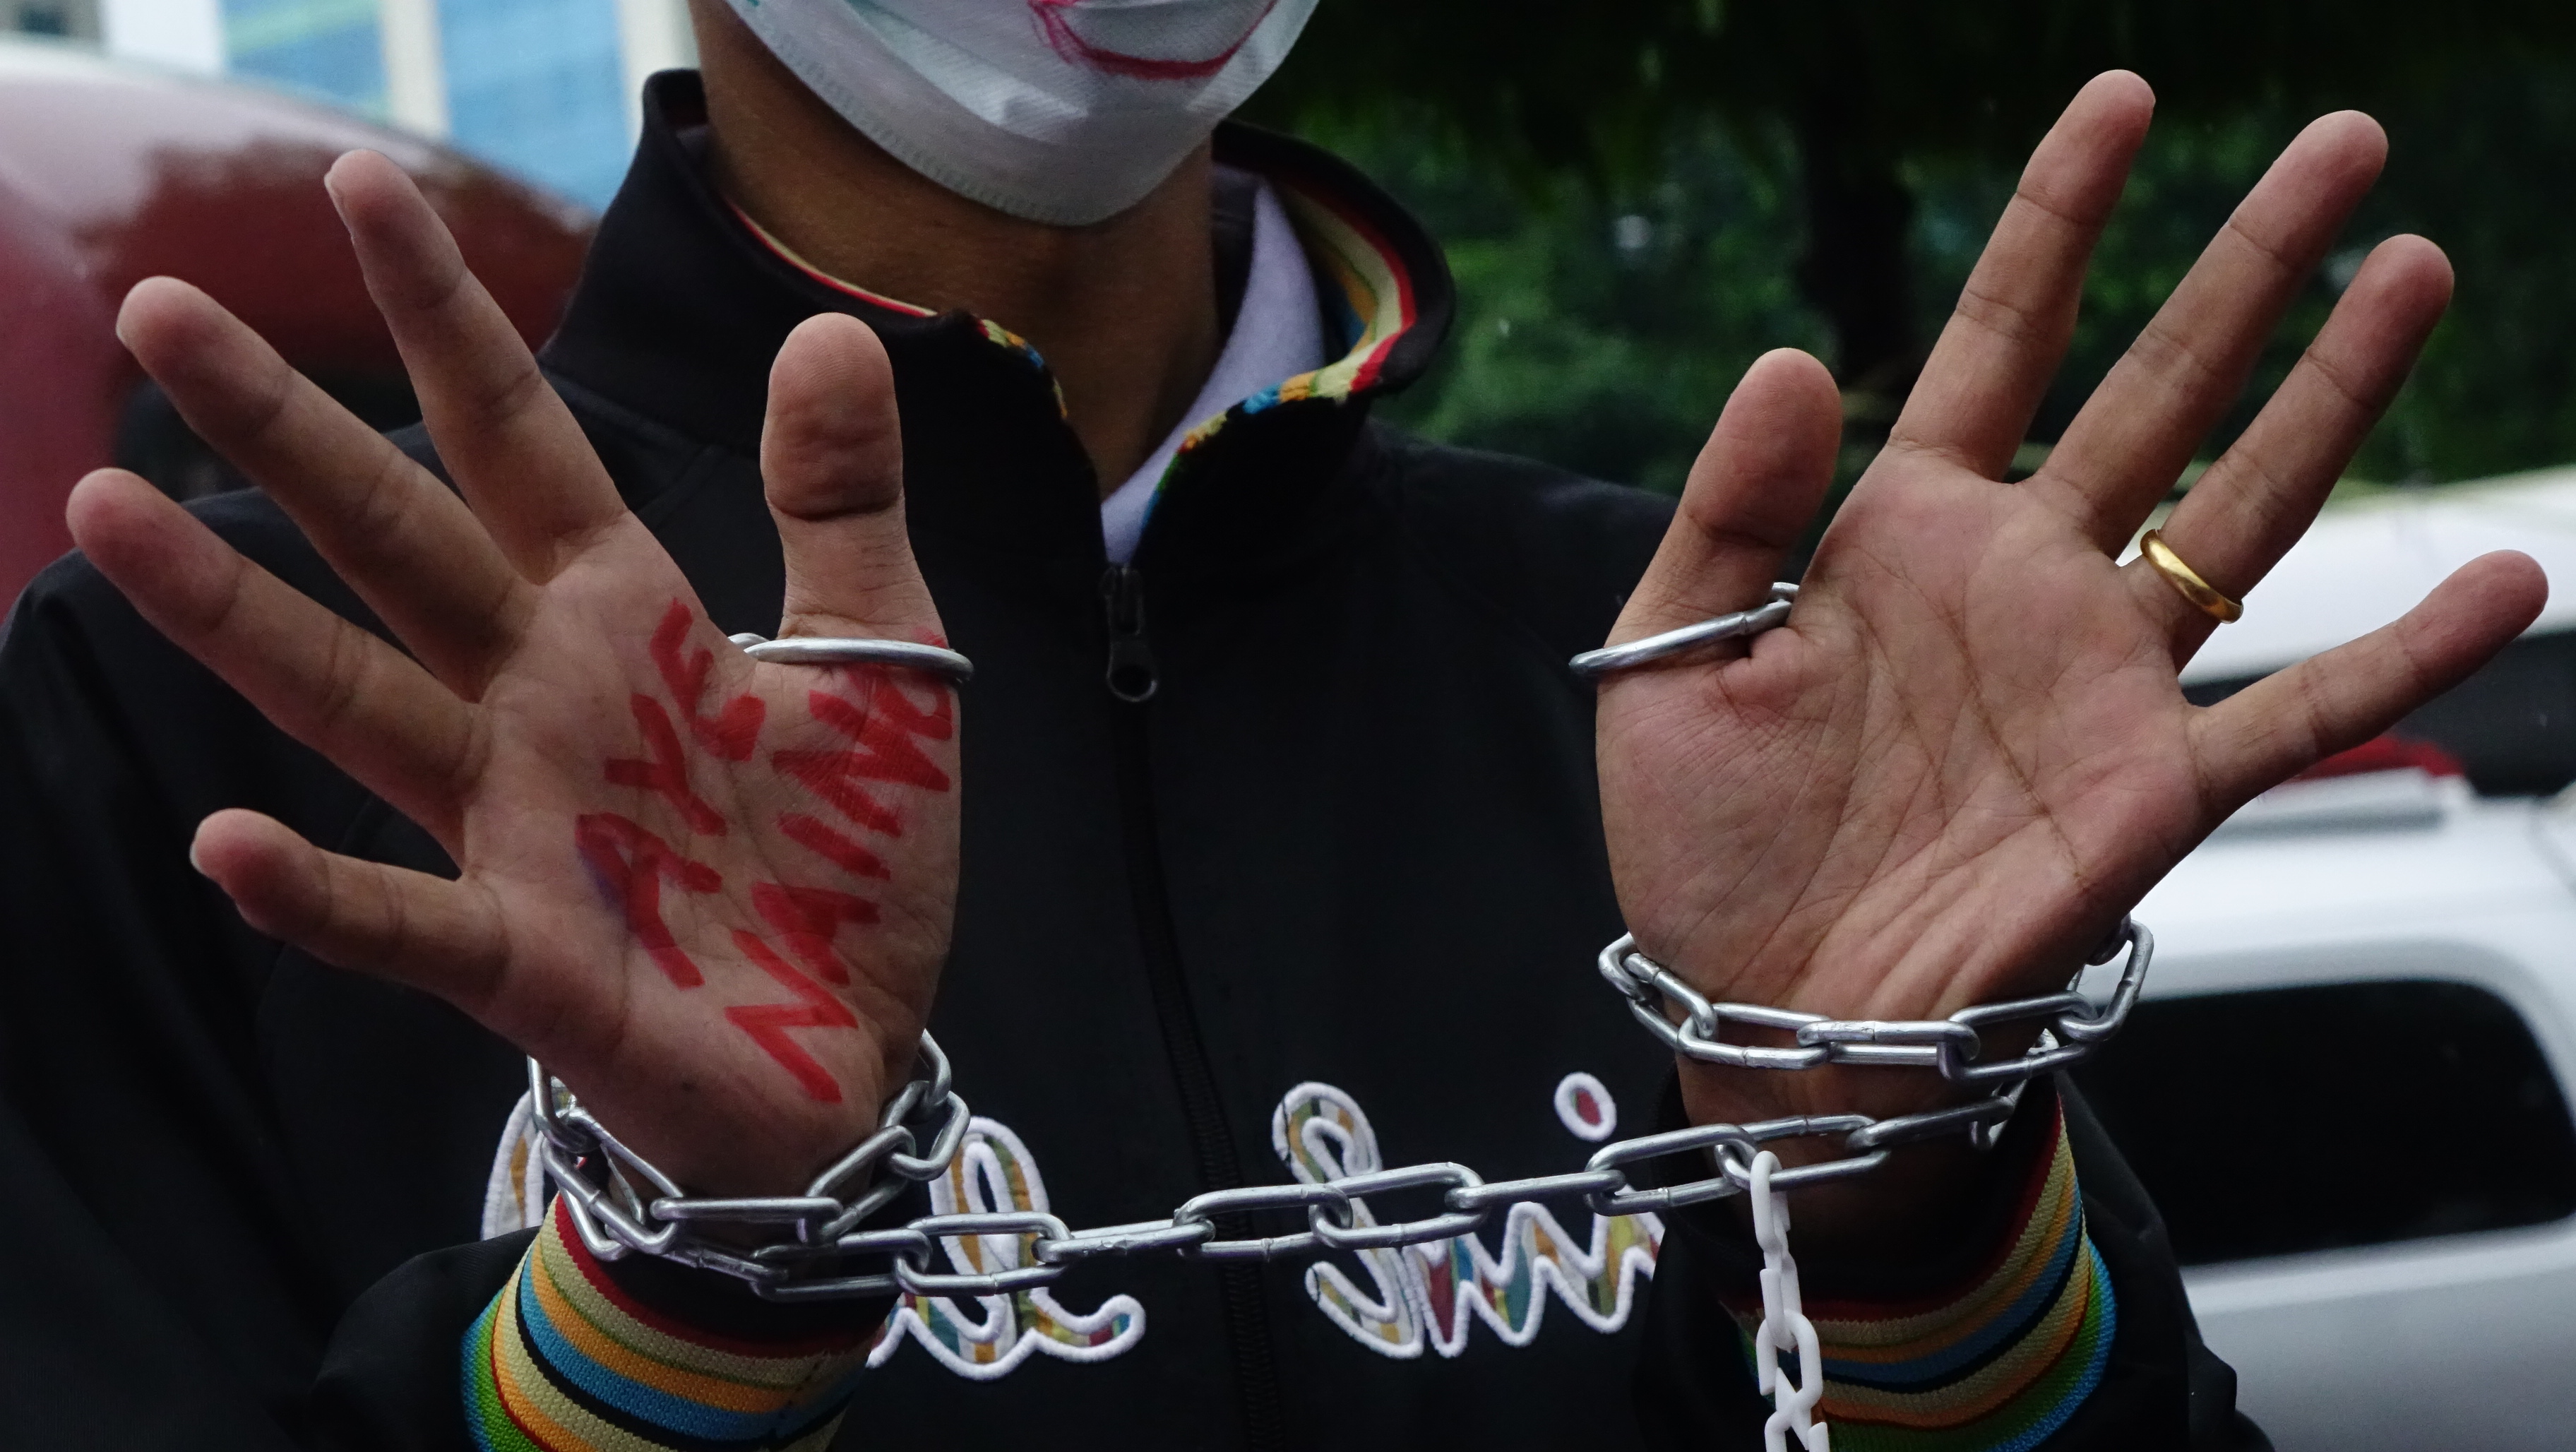 DVB Podcast: Press freedom backtracks in Burma